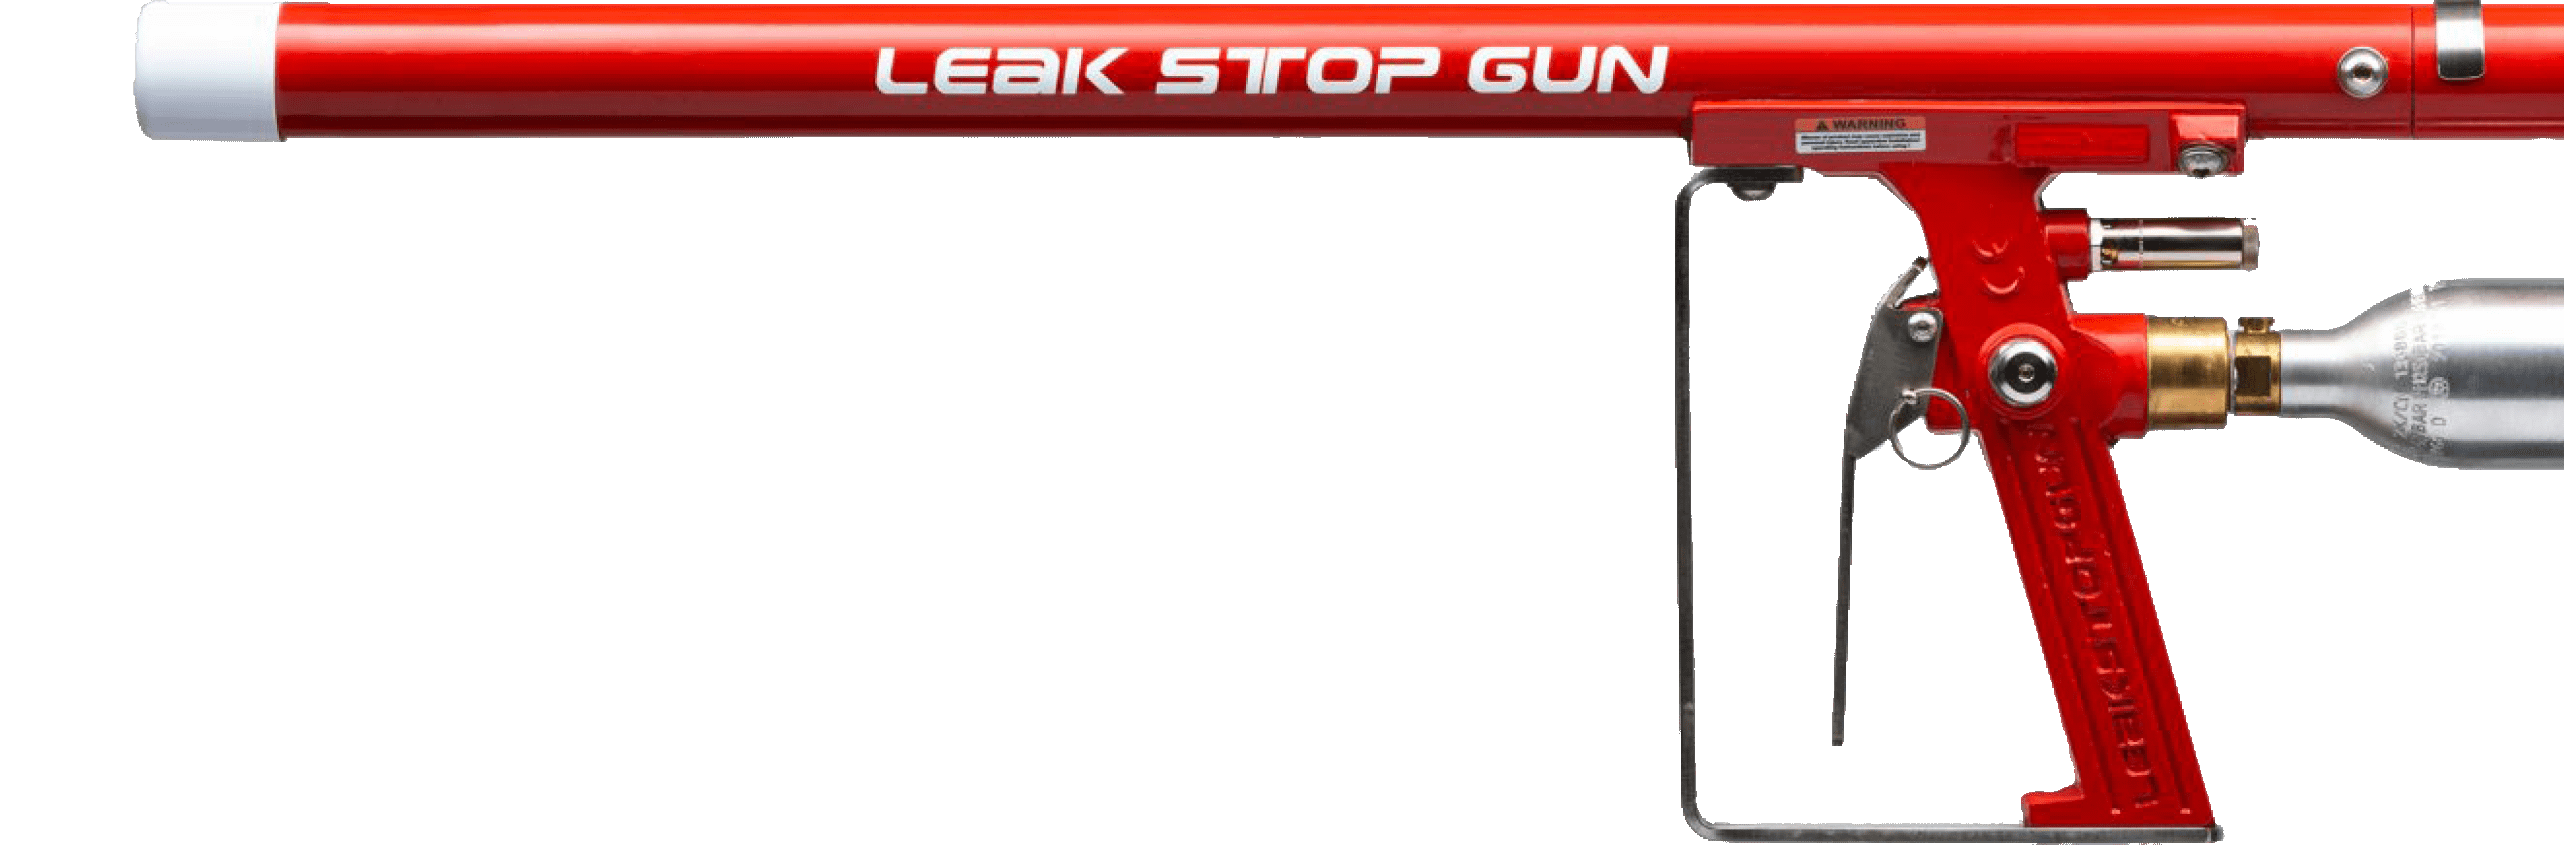 Leak Stop Gun LSG150